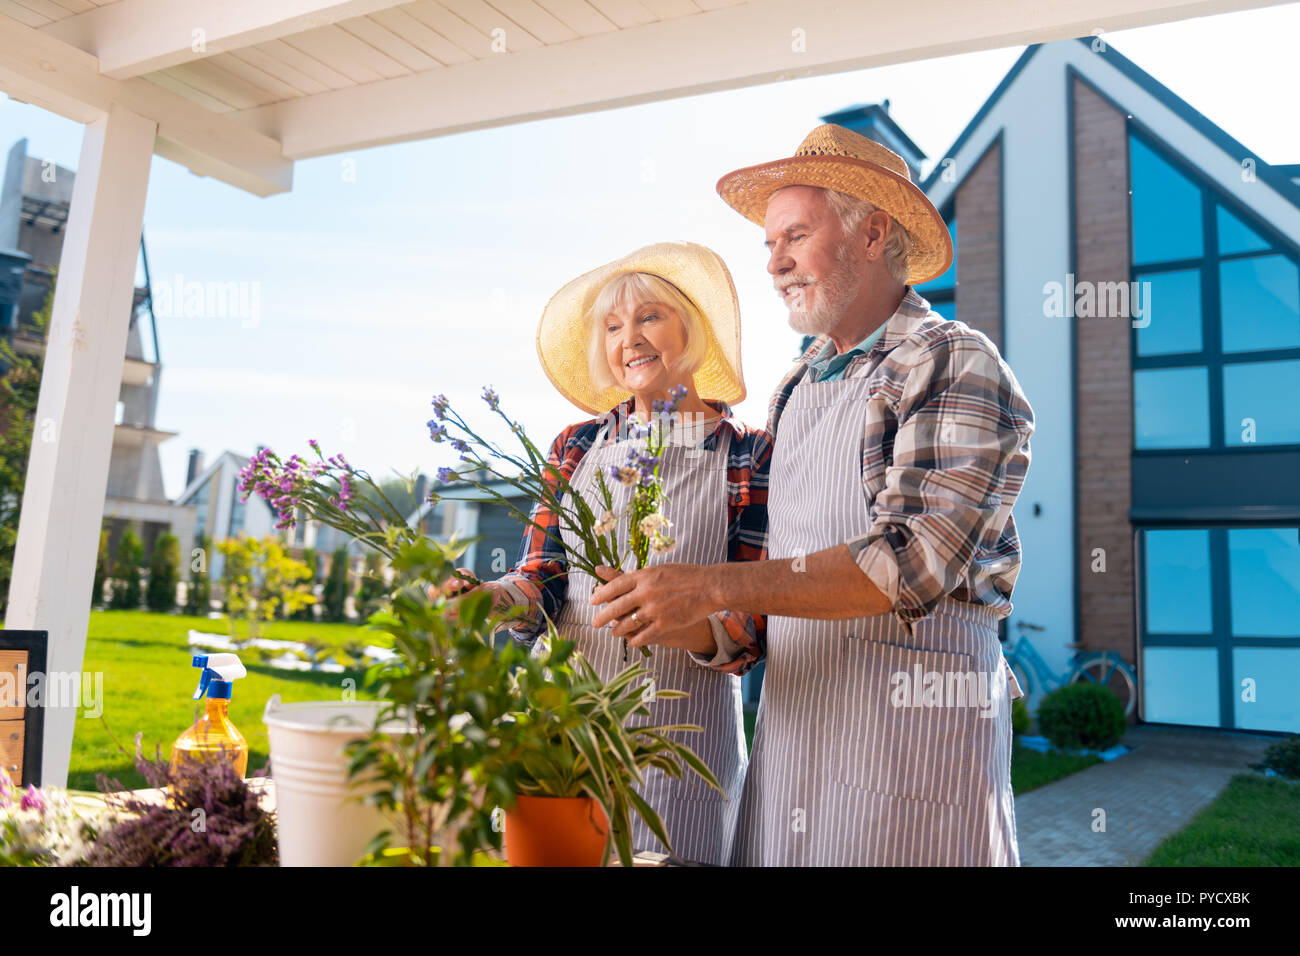 Reifer Mann und Frau tragen gestreifte Schürzen die Pflege von Blumen und Pflanzen. Stockfoto